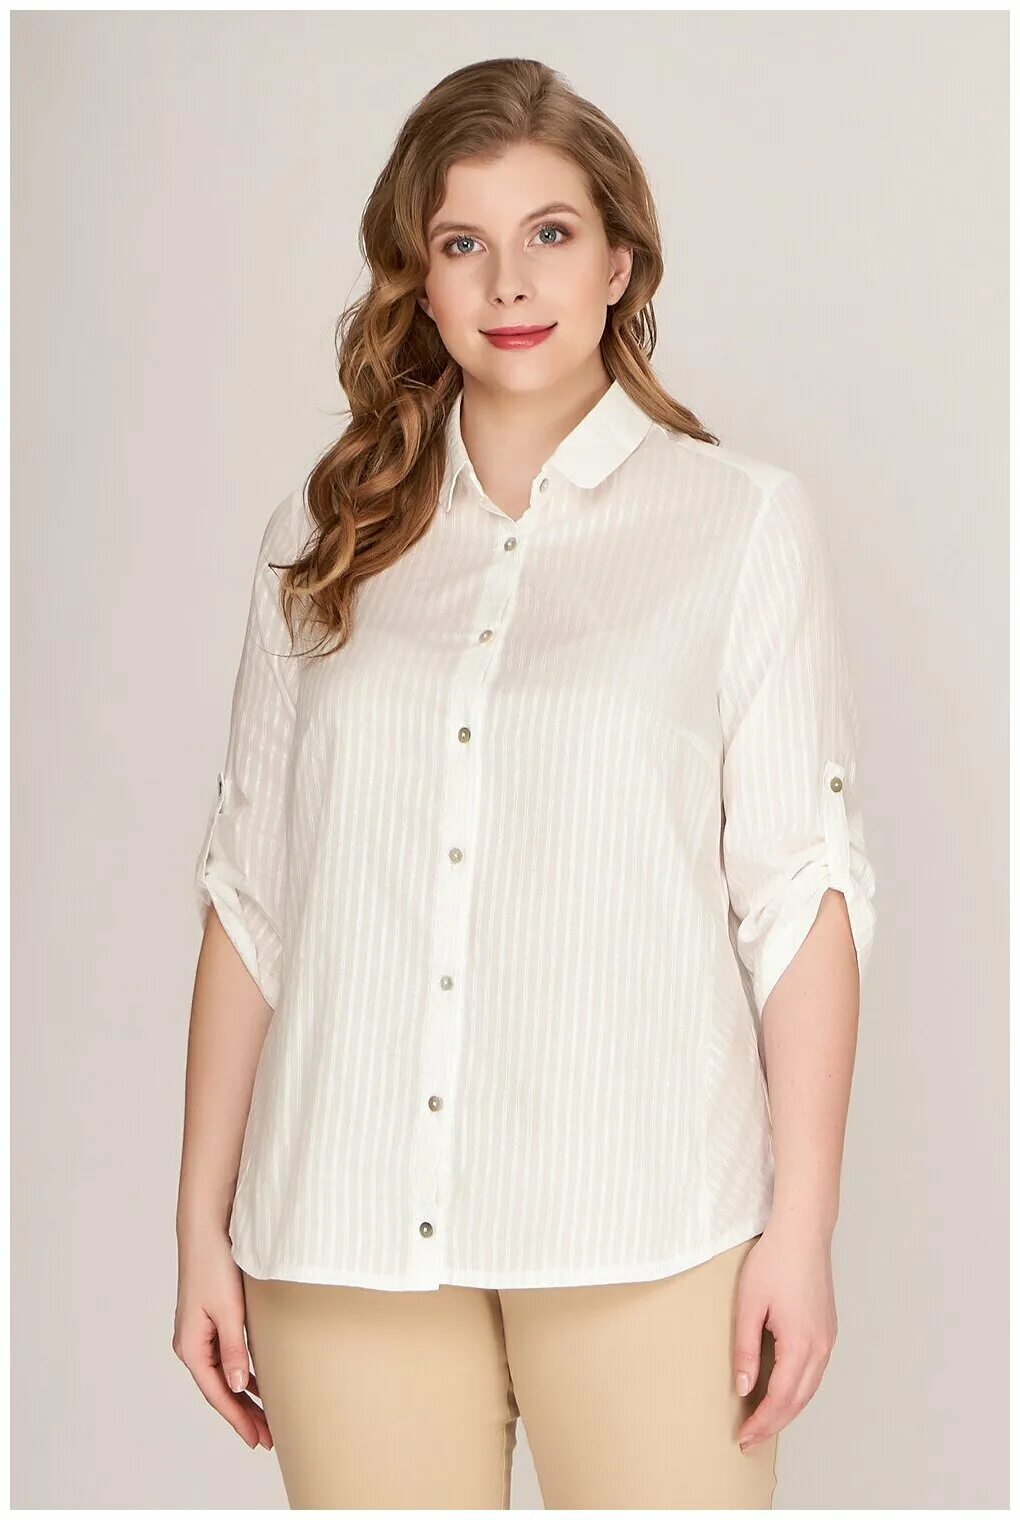 Купить блузку 54 размера. Блуза 41255 Lina. Женщина в блузке. Белые блузки для полных. Блузки для полных женщин.